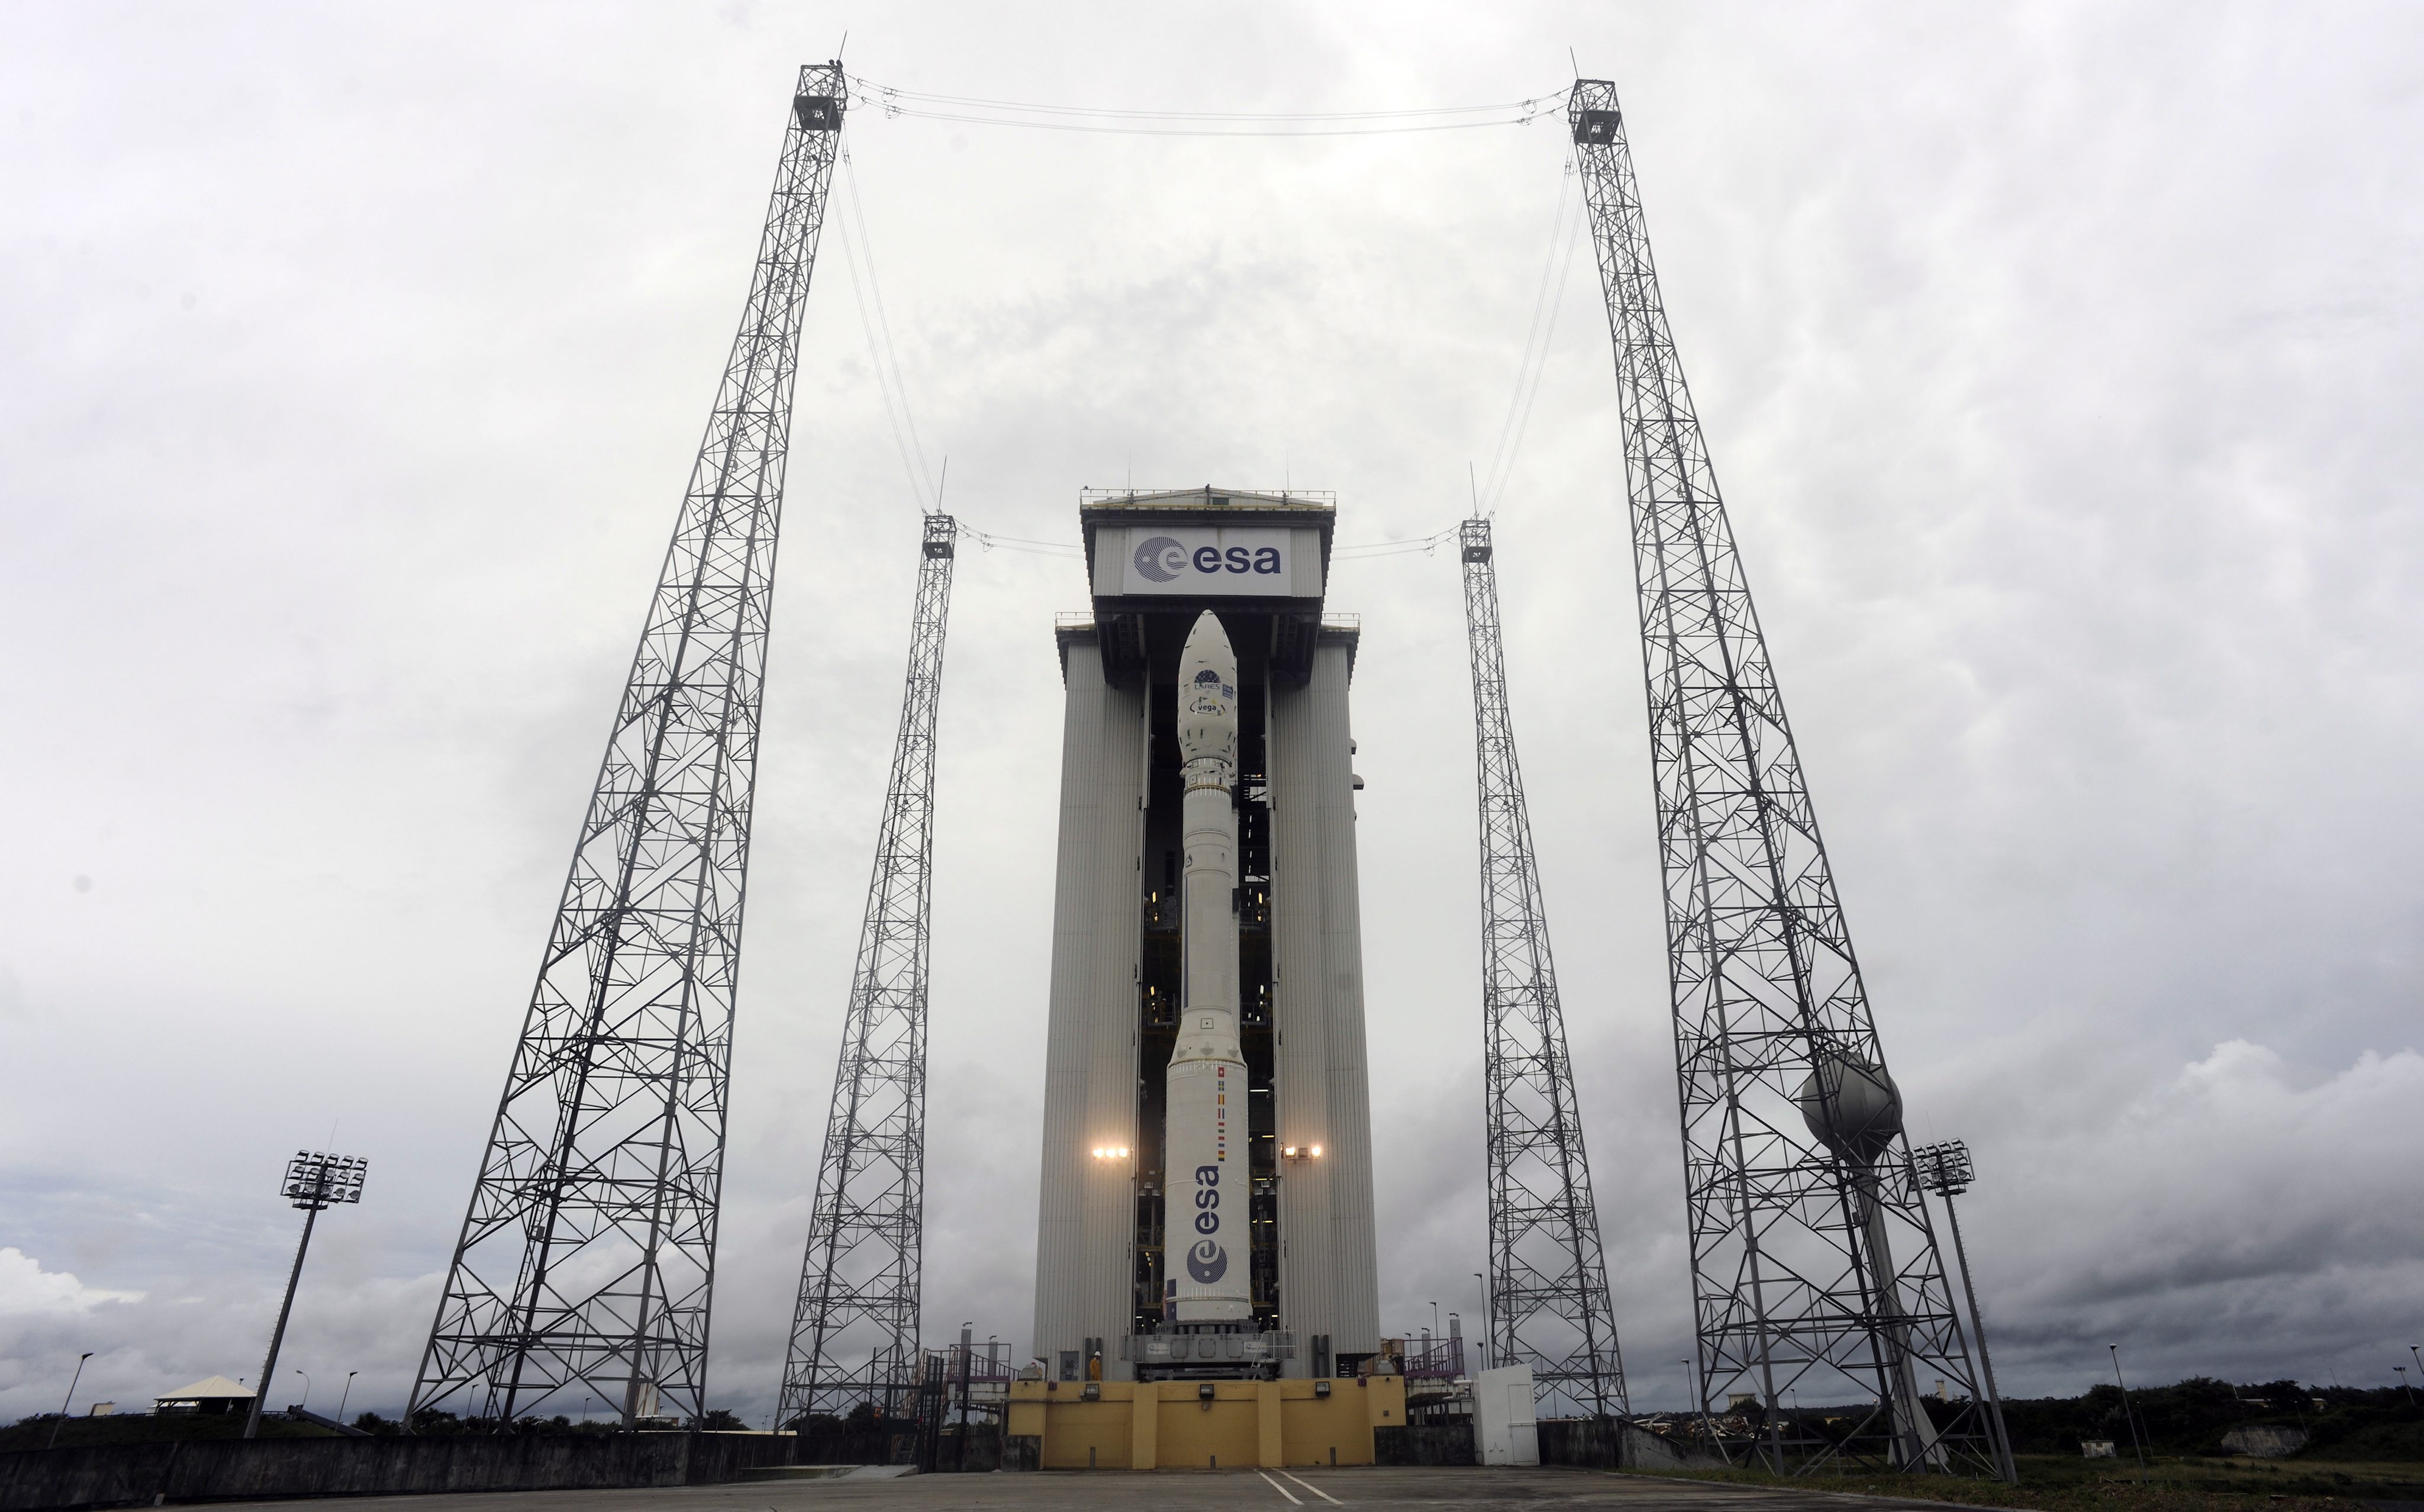 Първият полет на Вега цели да осигури на Европа начин за провеждане на научни сателитни мисии